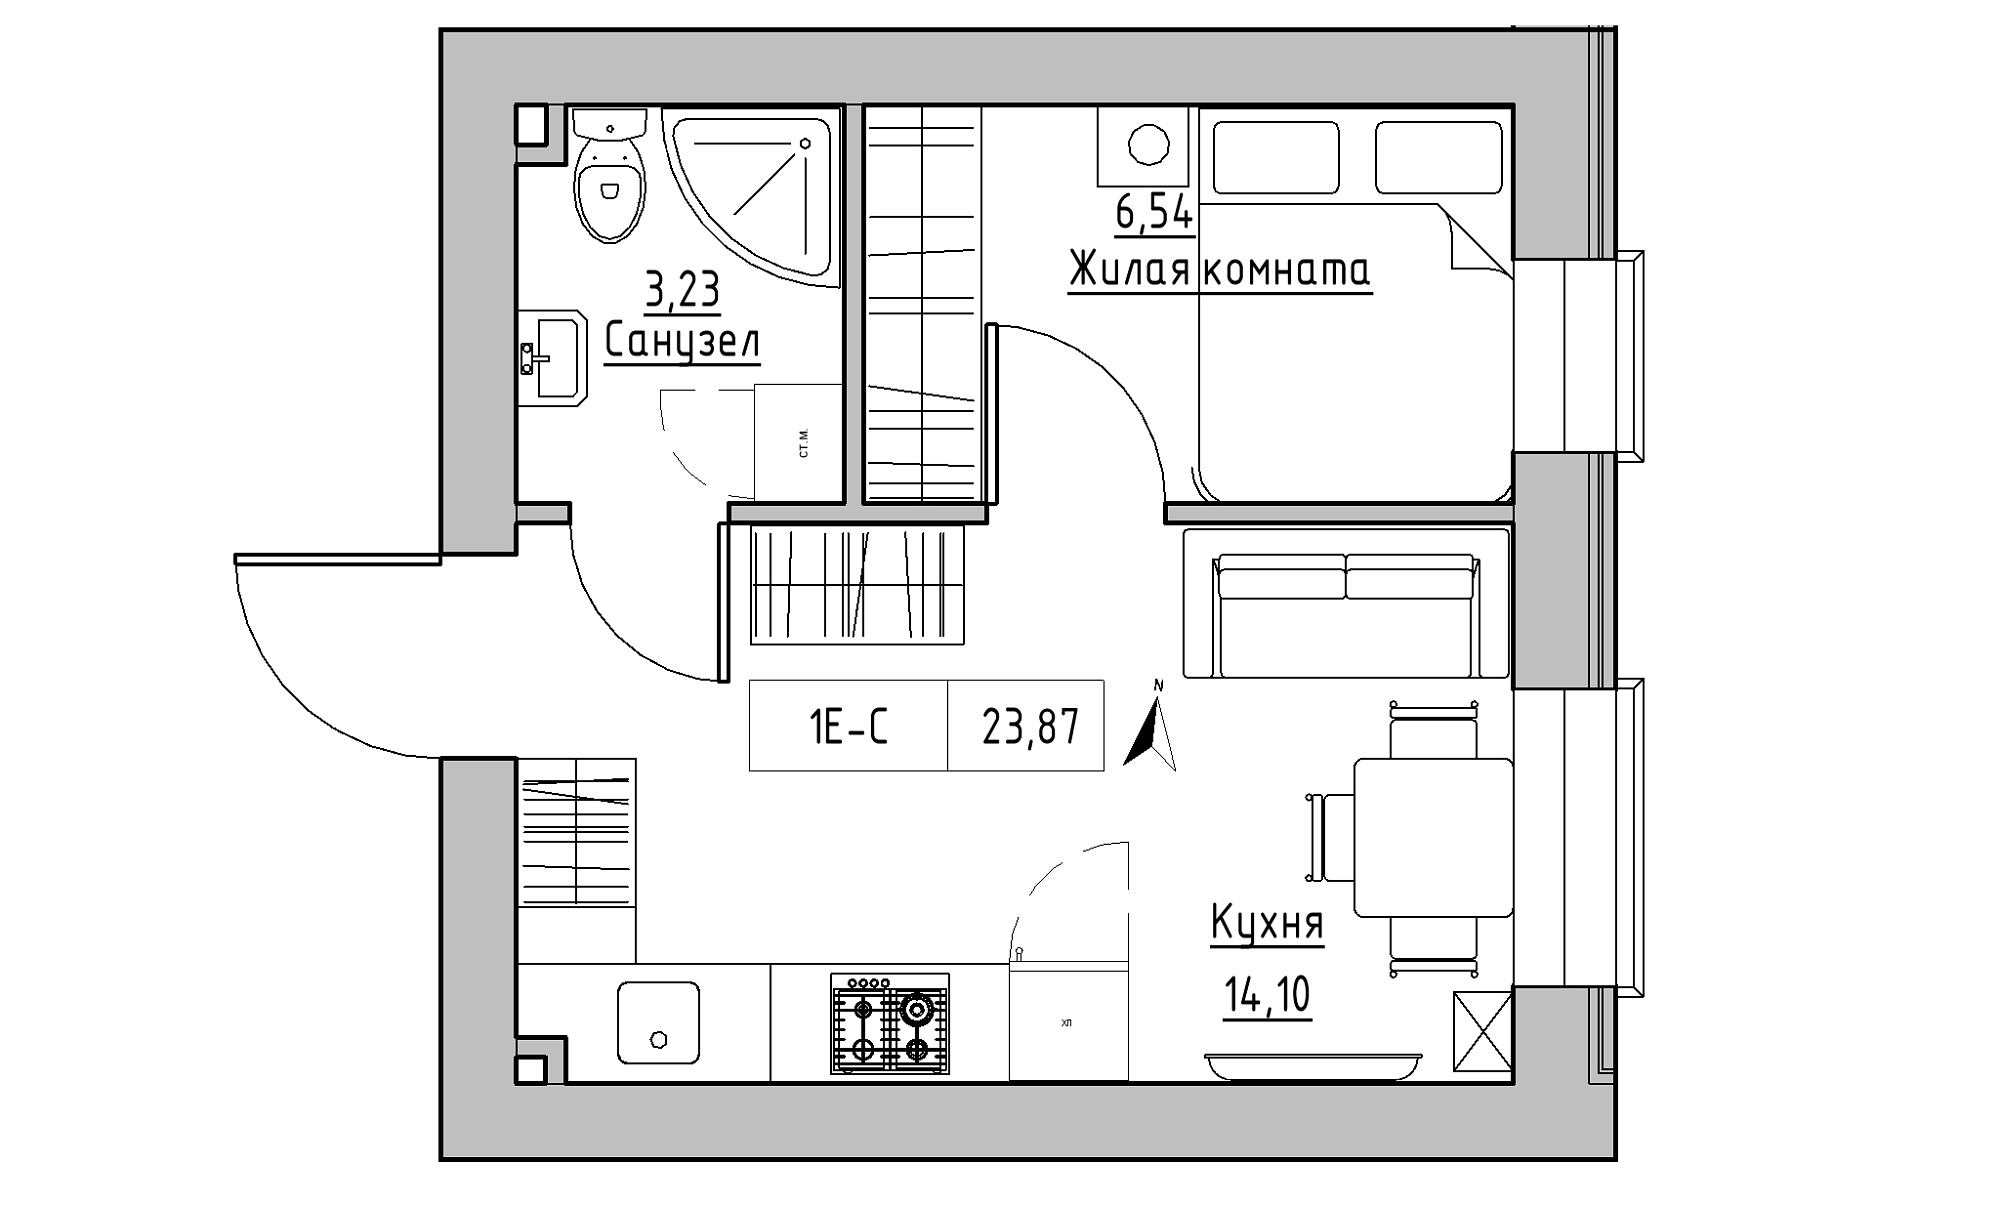 Планування 1-к квартира площею 23.87м2, KS-023-03/0004.